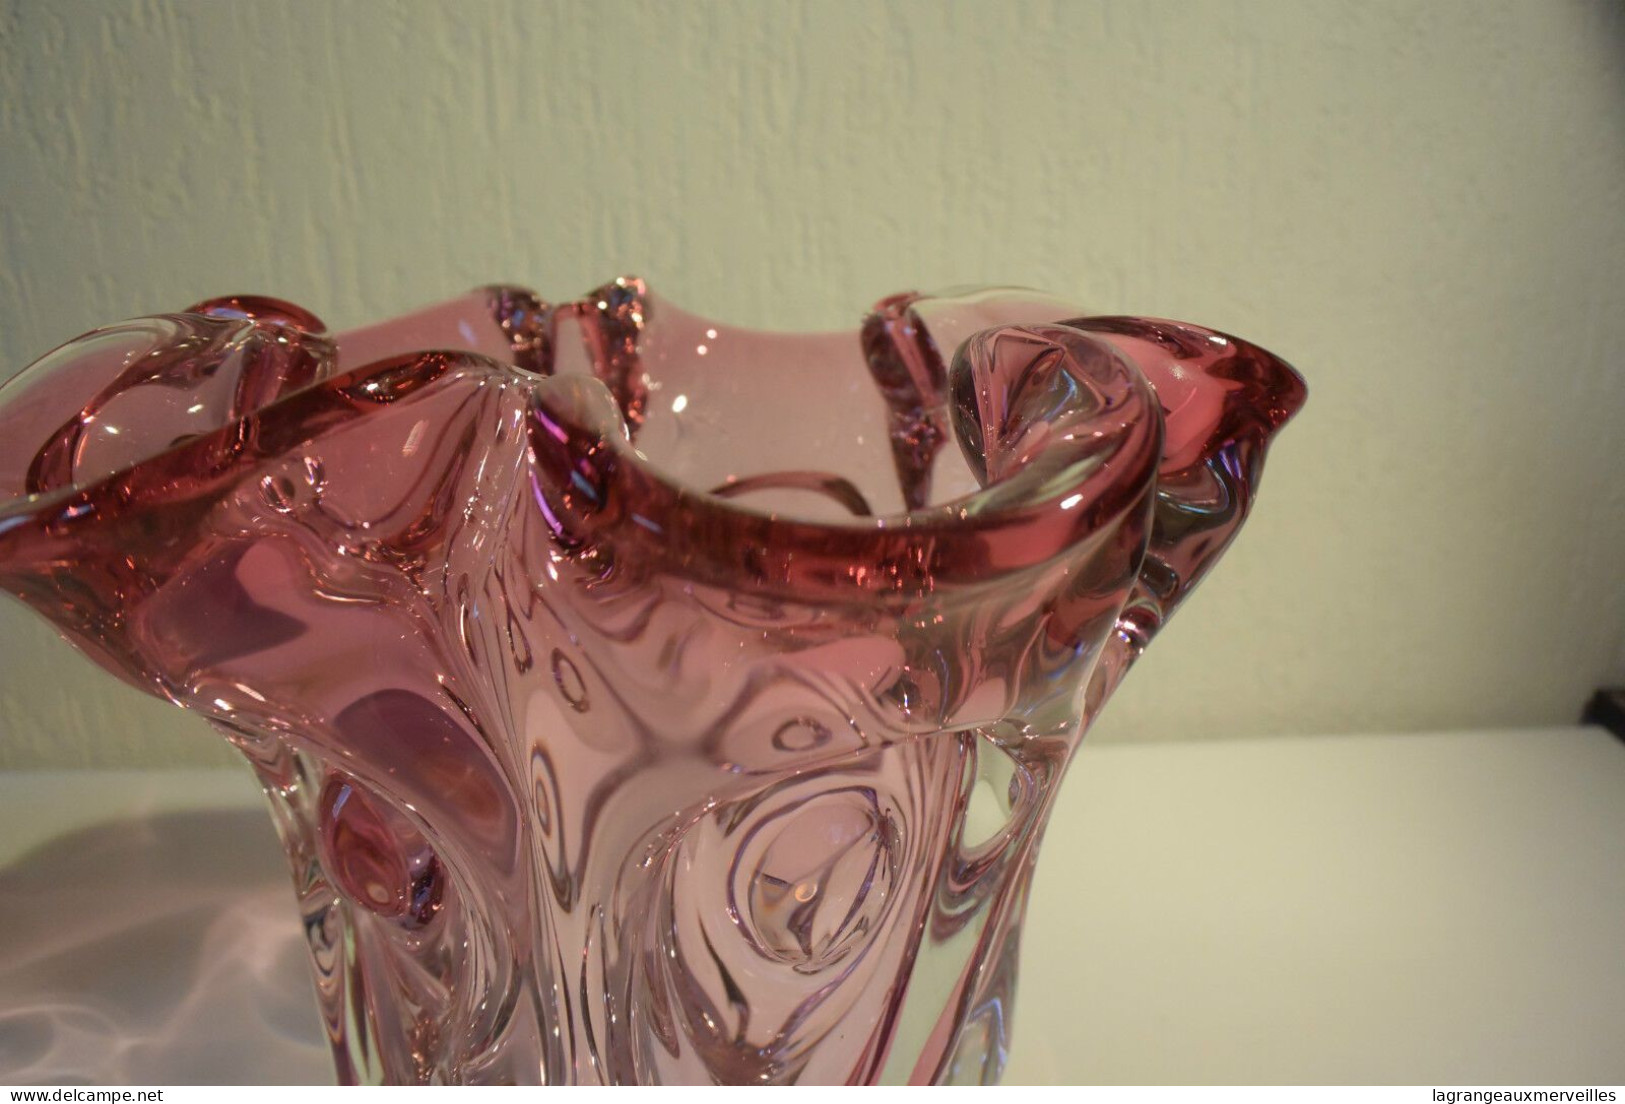 E1 Magnifique vase plat en verre étiré rose violet travail exceptionnel !!!